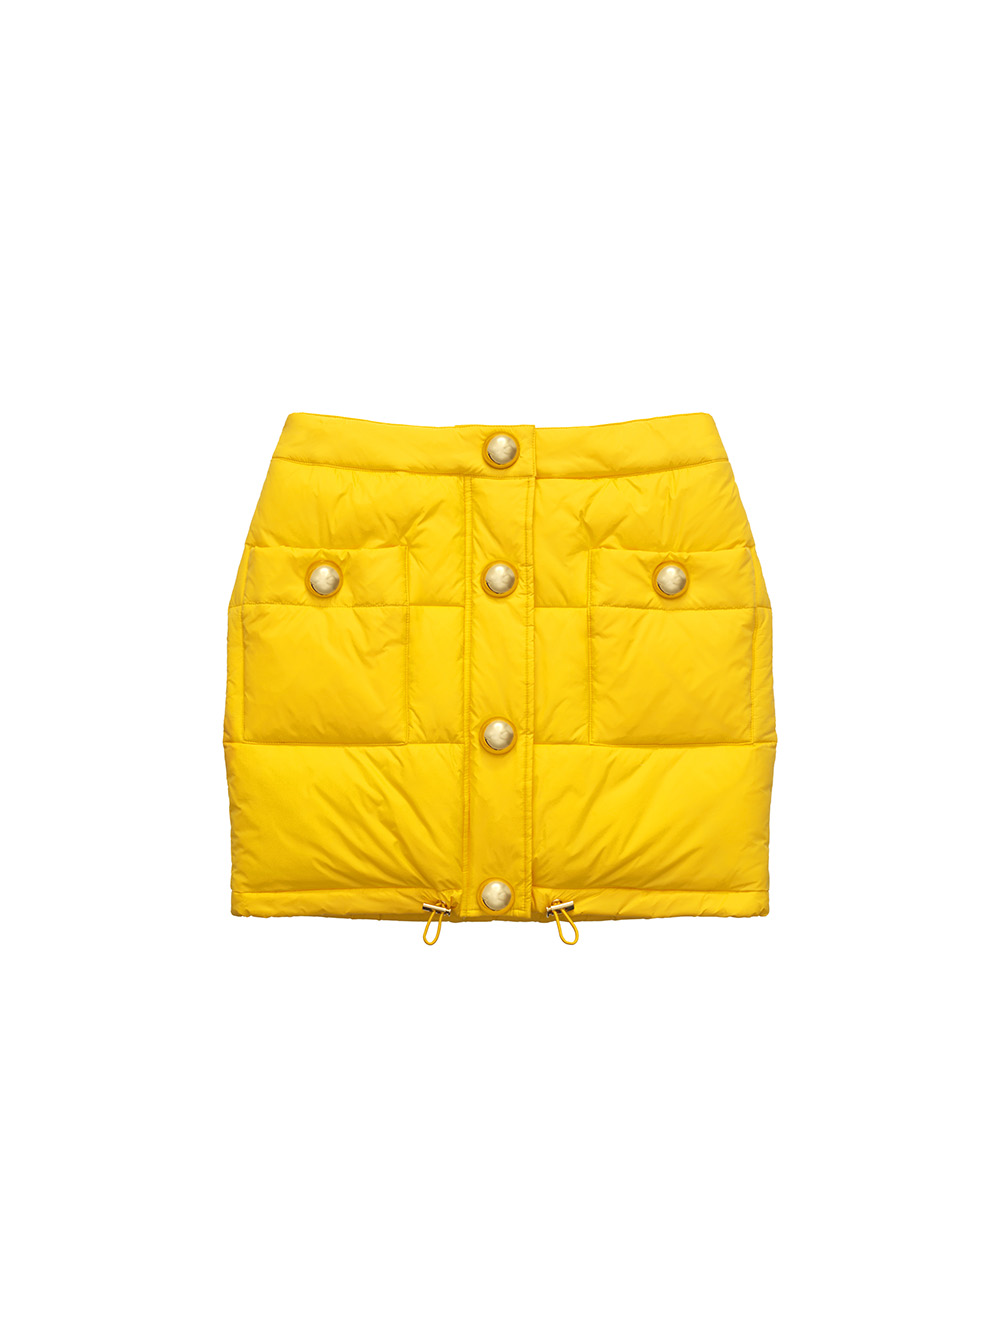 MOSCHINO [TV] H&M Puffer Skirt $129.00